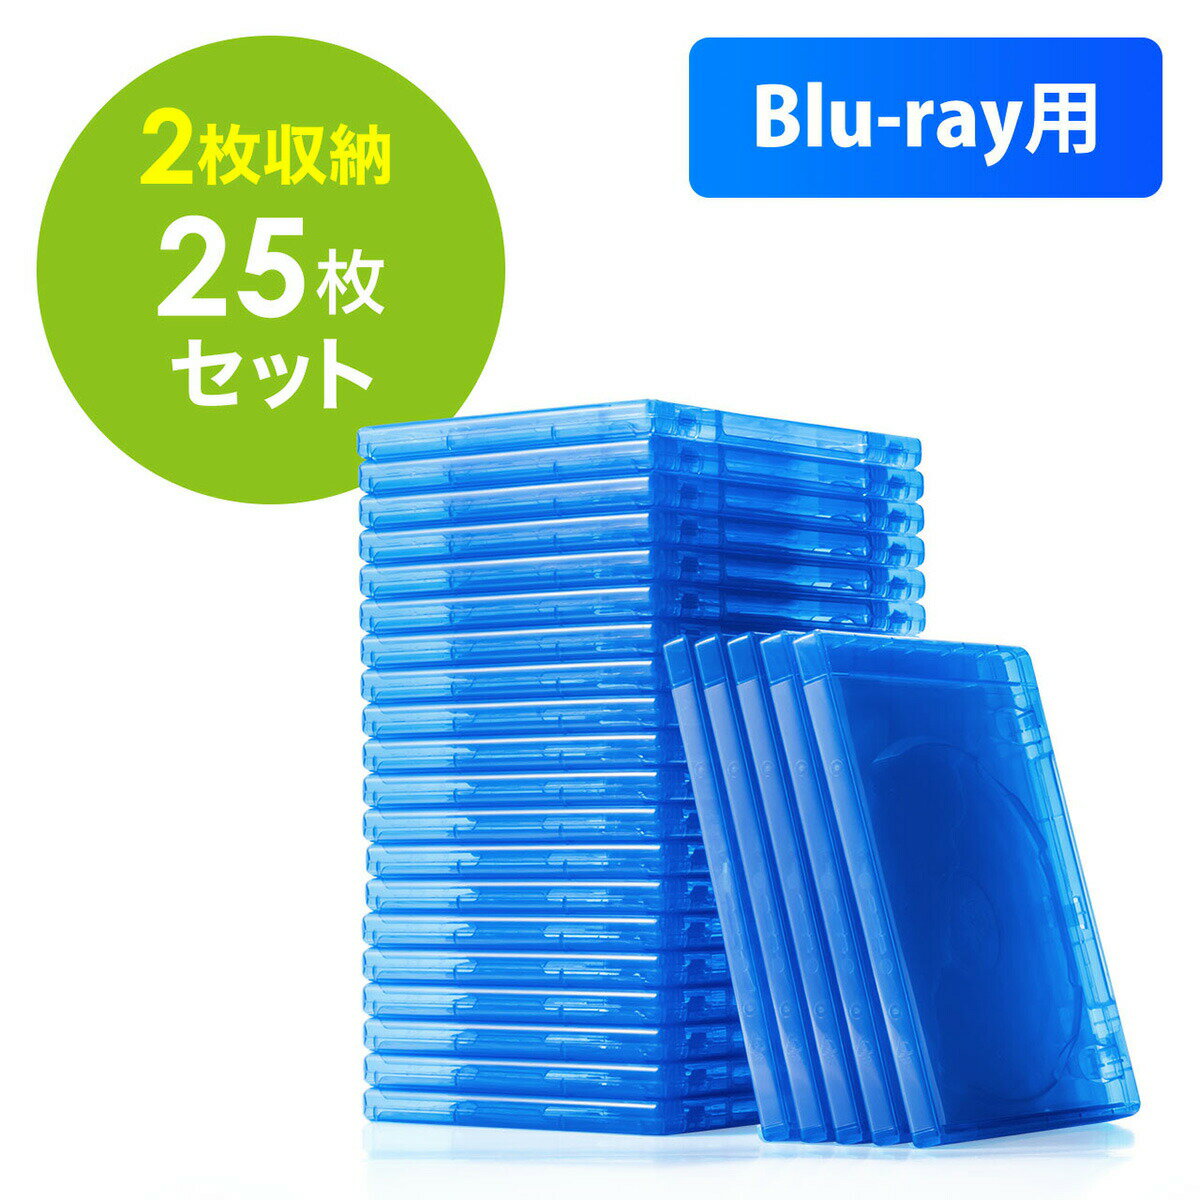 ブルーレイディスクケース Blu-ray プラケース 標準サイズ 2枚収納 25個セット メディアケース ブルー